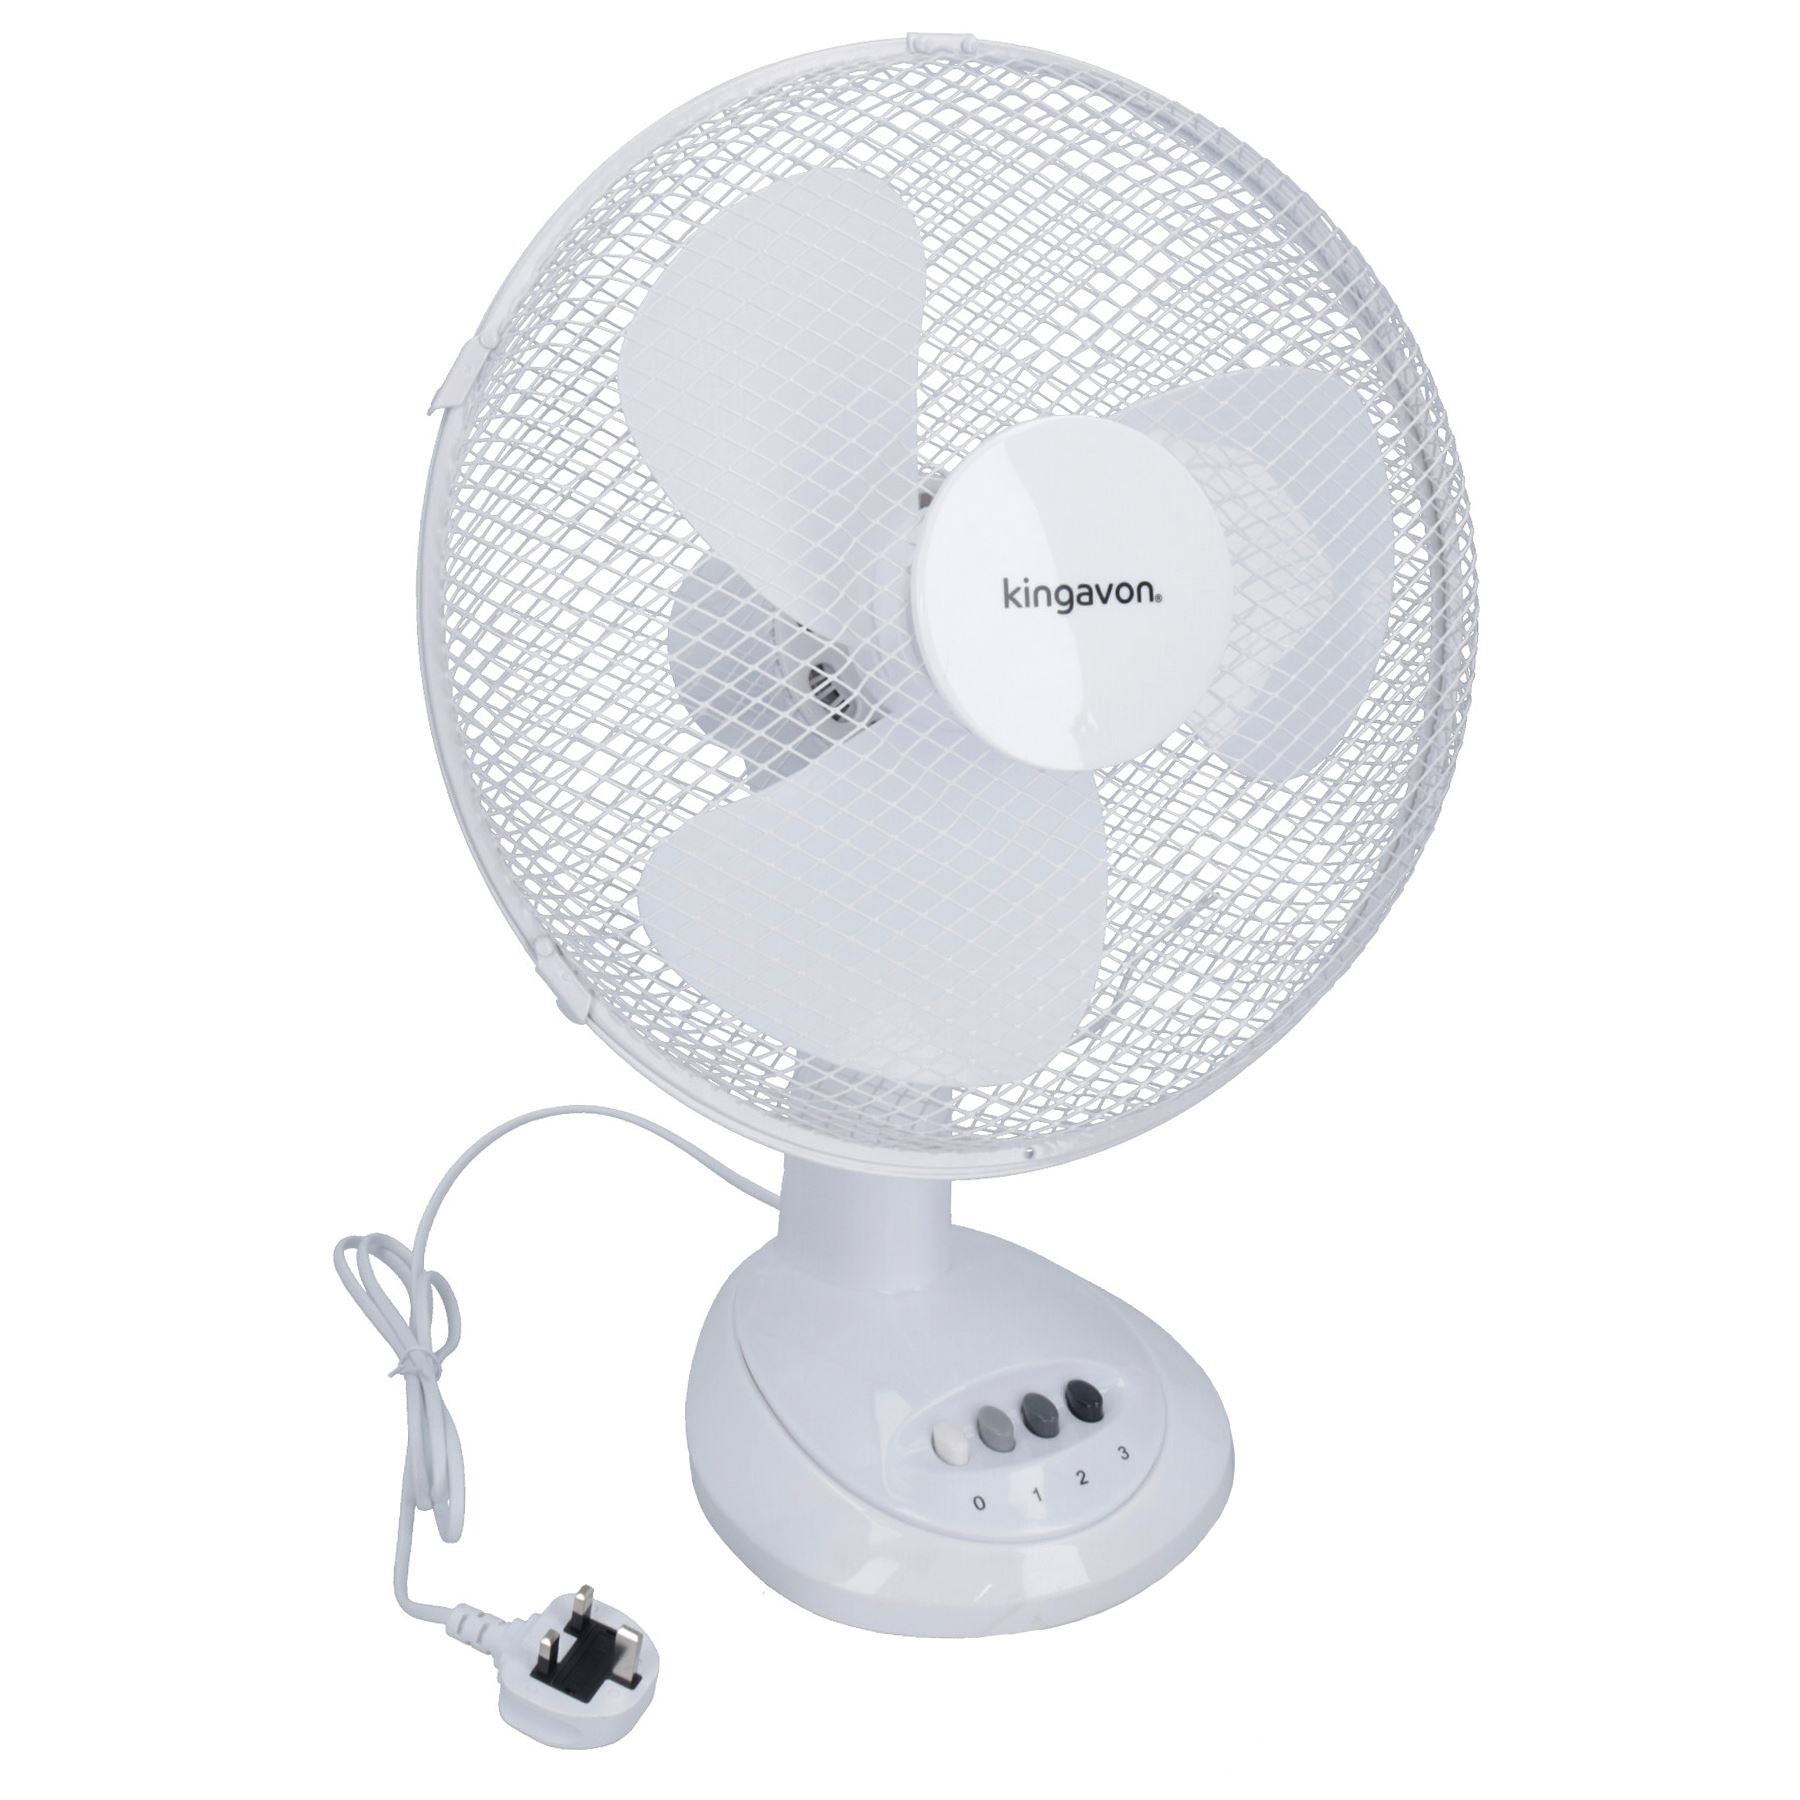 12” Oscillating Desk Fan Portable Tilting Head Cooling 3 Speed Silent UK Plug